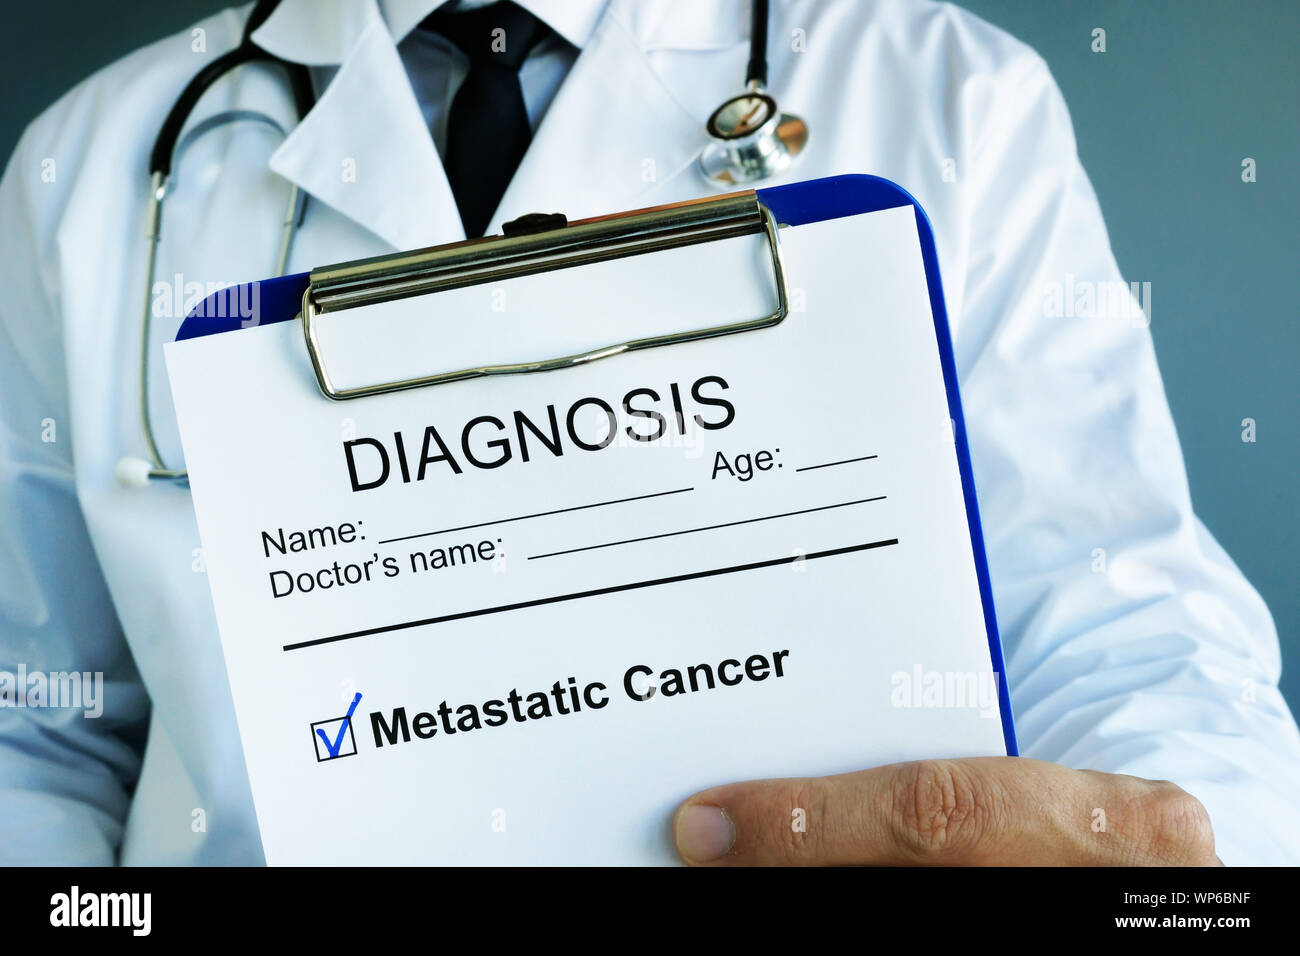 Le diagnostic de cancer métastatique dans un formulaire médical avec presse-papiers. Banque D'Images